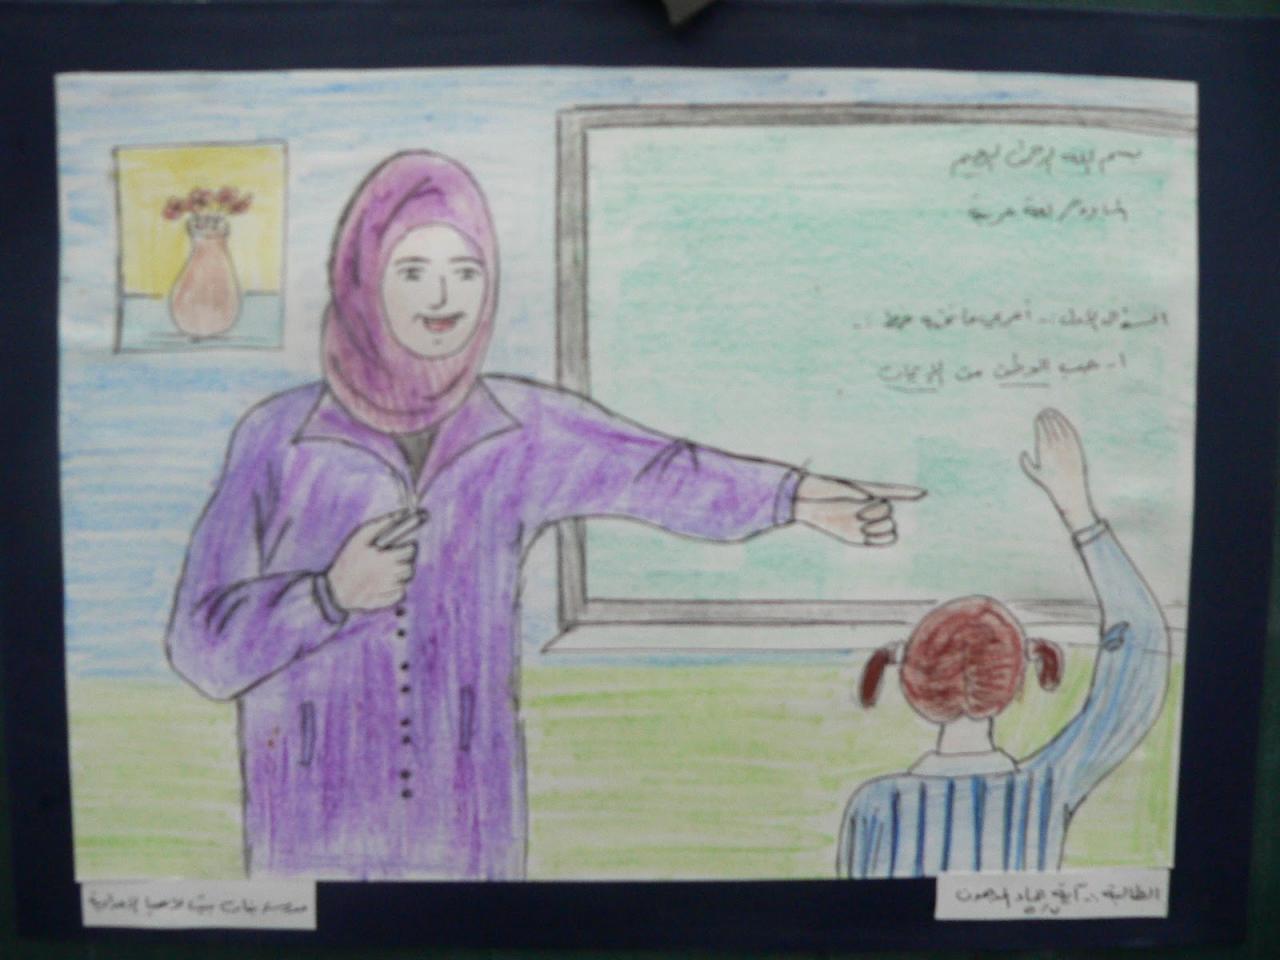 رسومات عن يوم المعلم , مسابقة رسم عن المعلم - عتاب وزعل